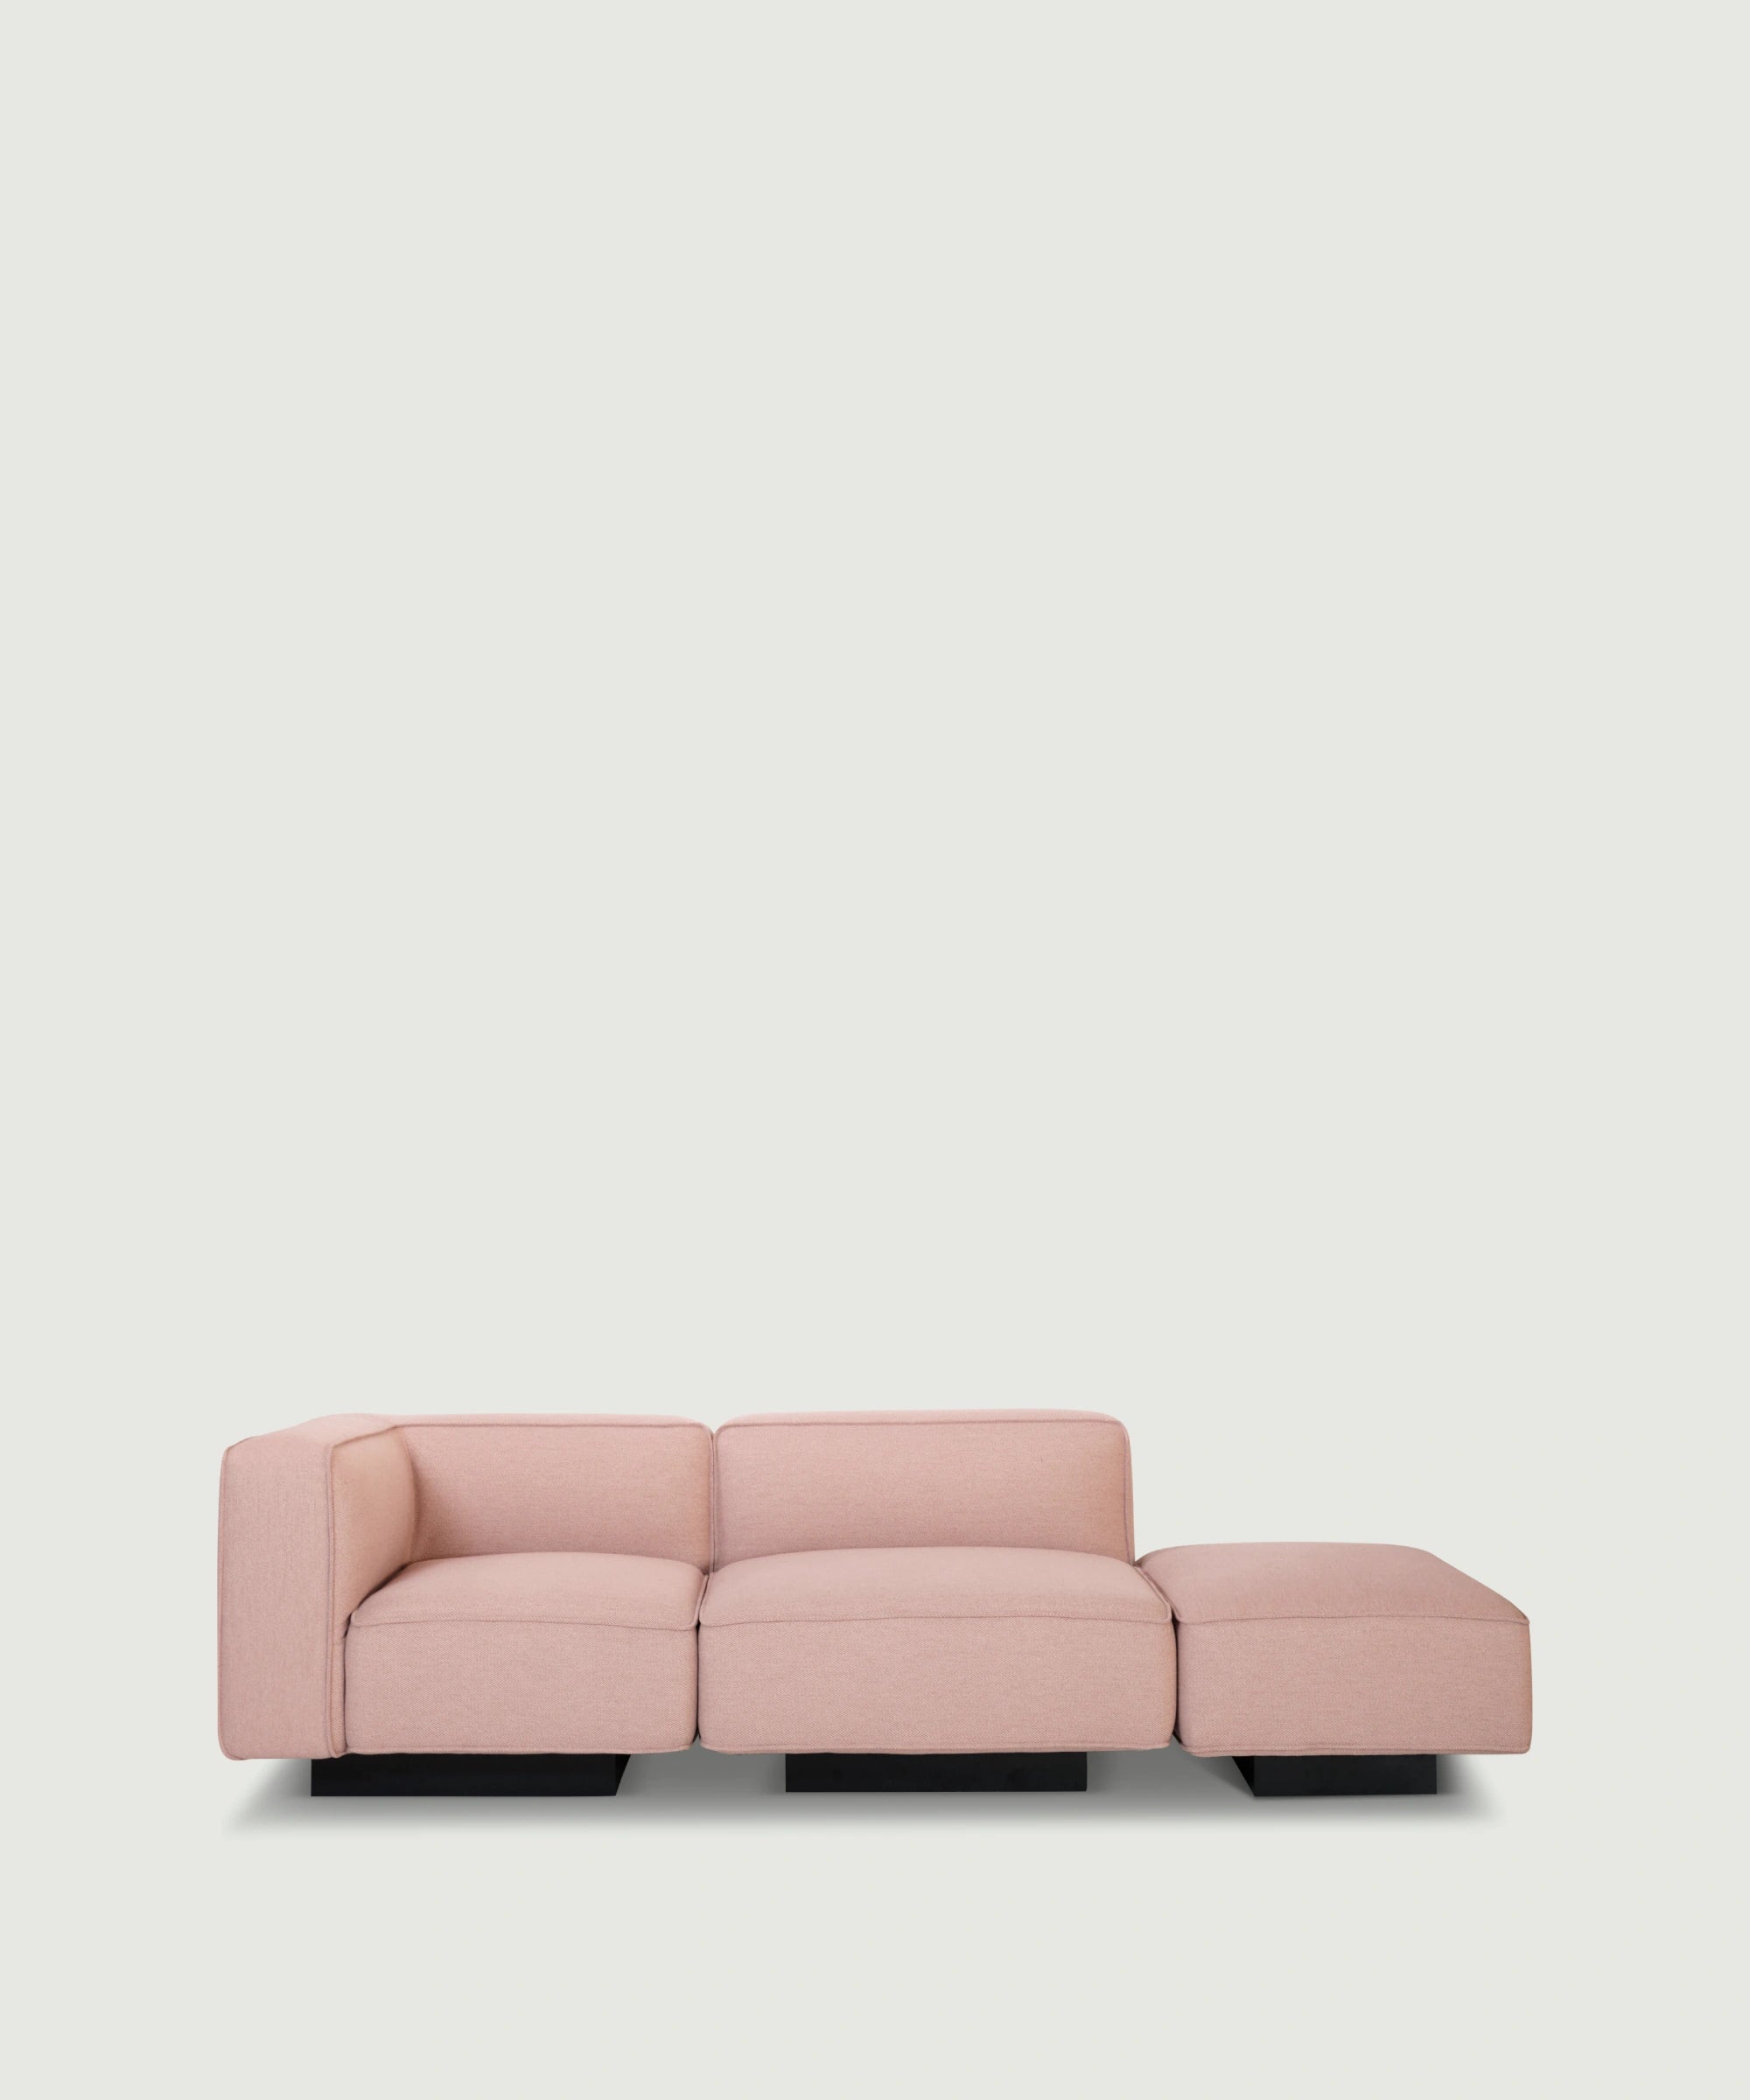 open end sofa til 3 personer I lys pink beige farve